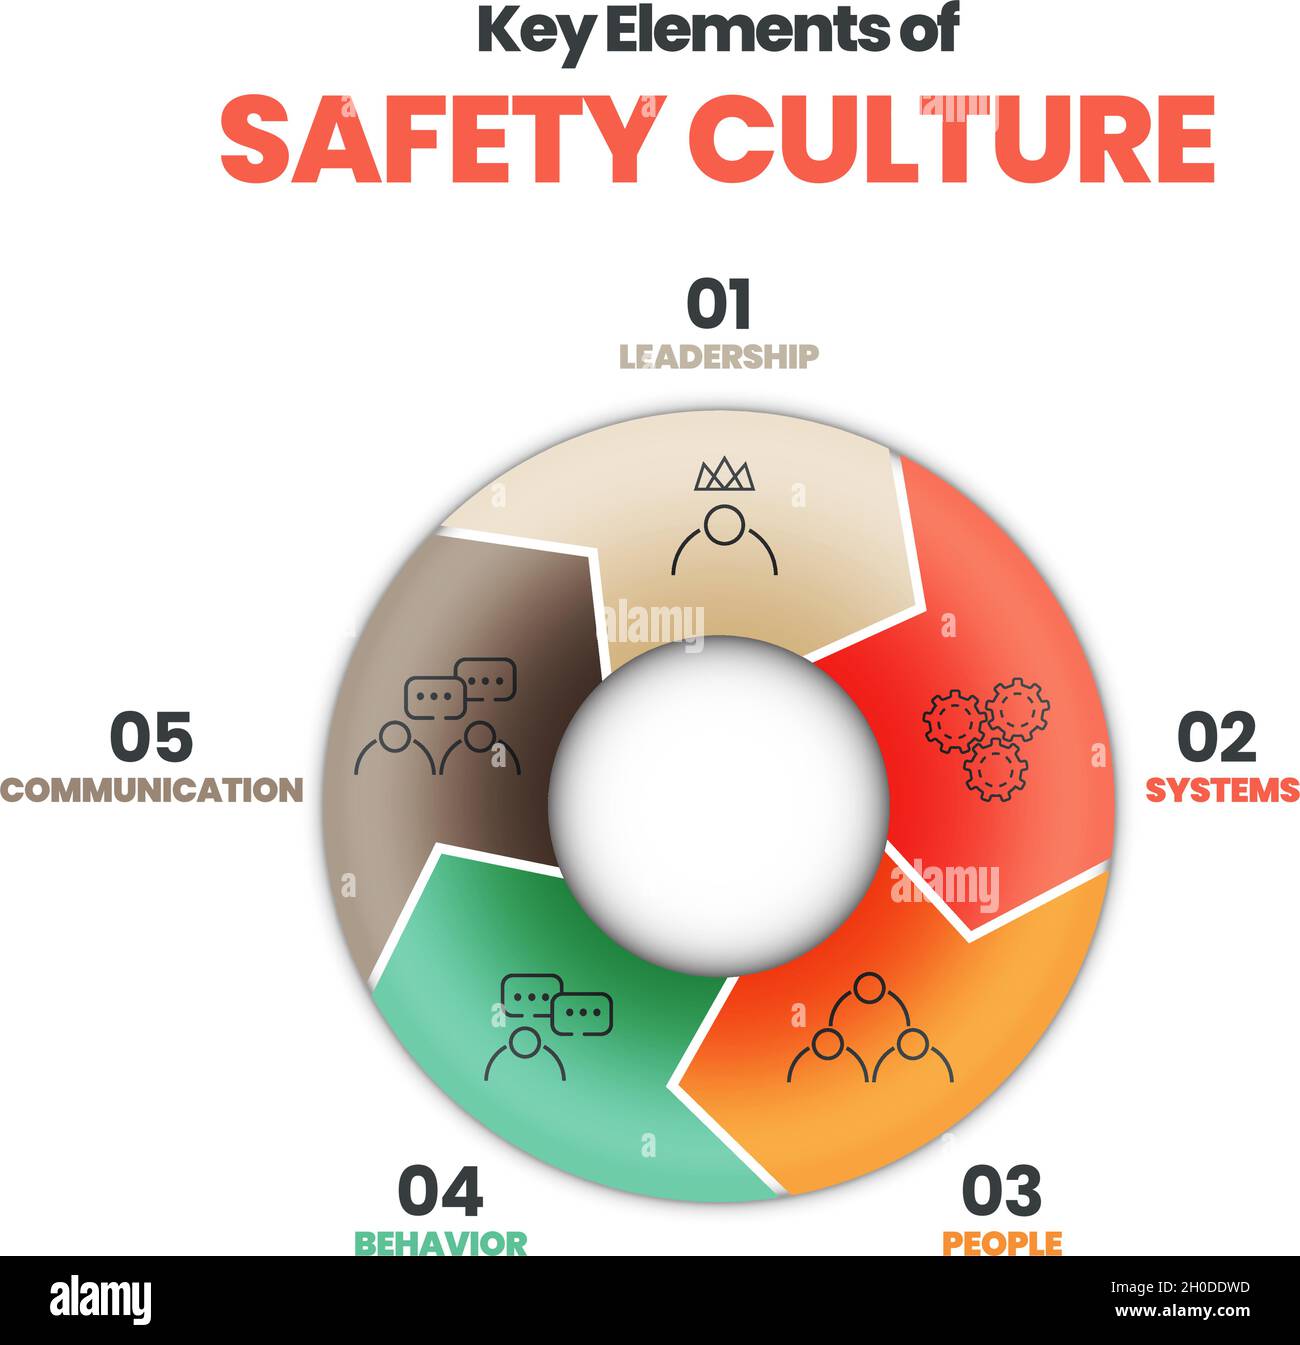 Il layout di presentazione del diagramma vettoriale è nel concetto di cultura della sicurezza. Illustrazione di 5 elementi della cultura della sicurezza come leadership, sistemi, persone e comportamento. Illustrazione Vettoriale